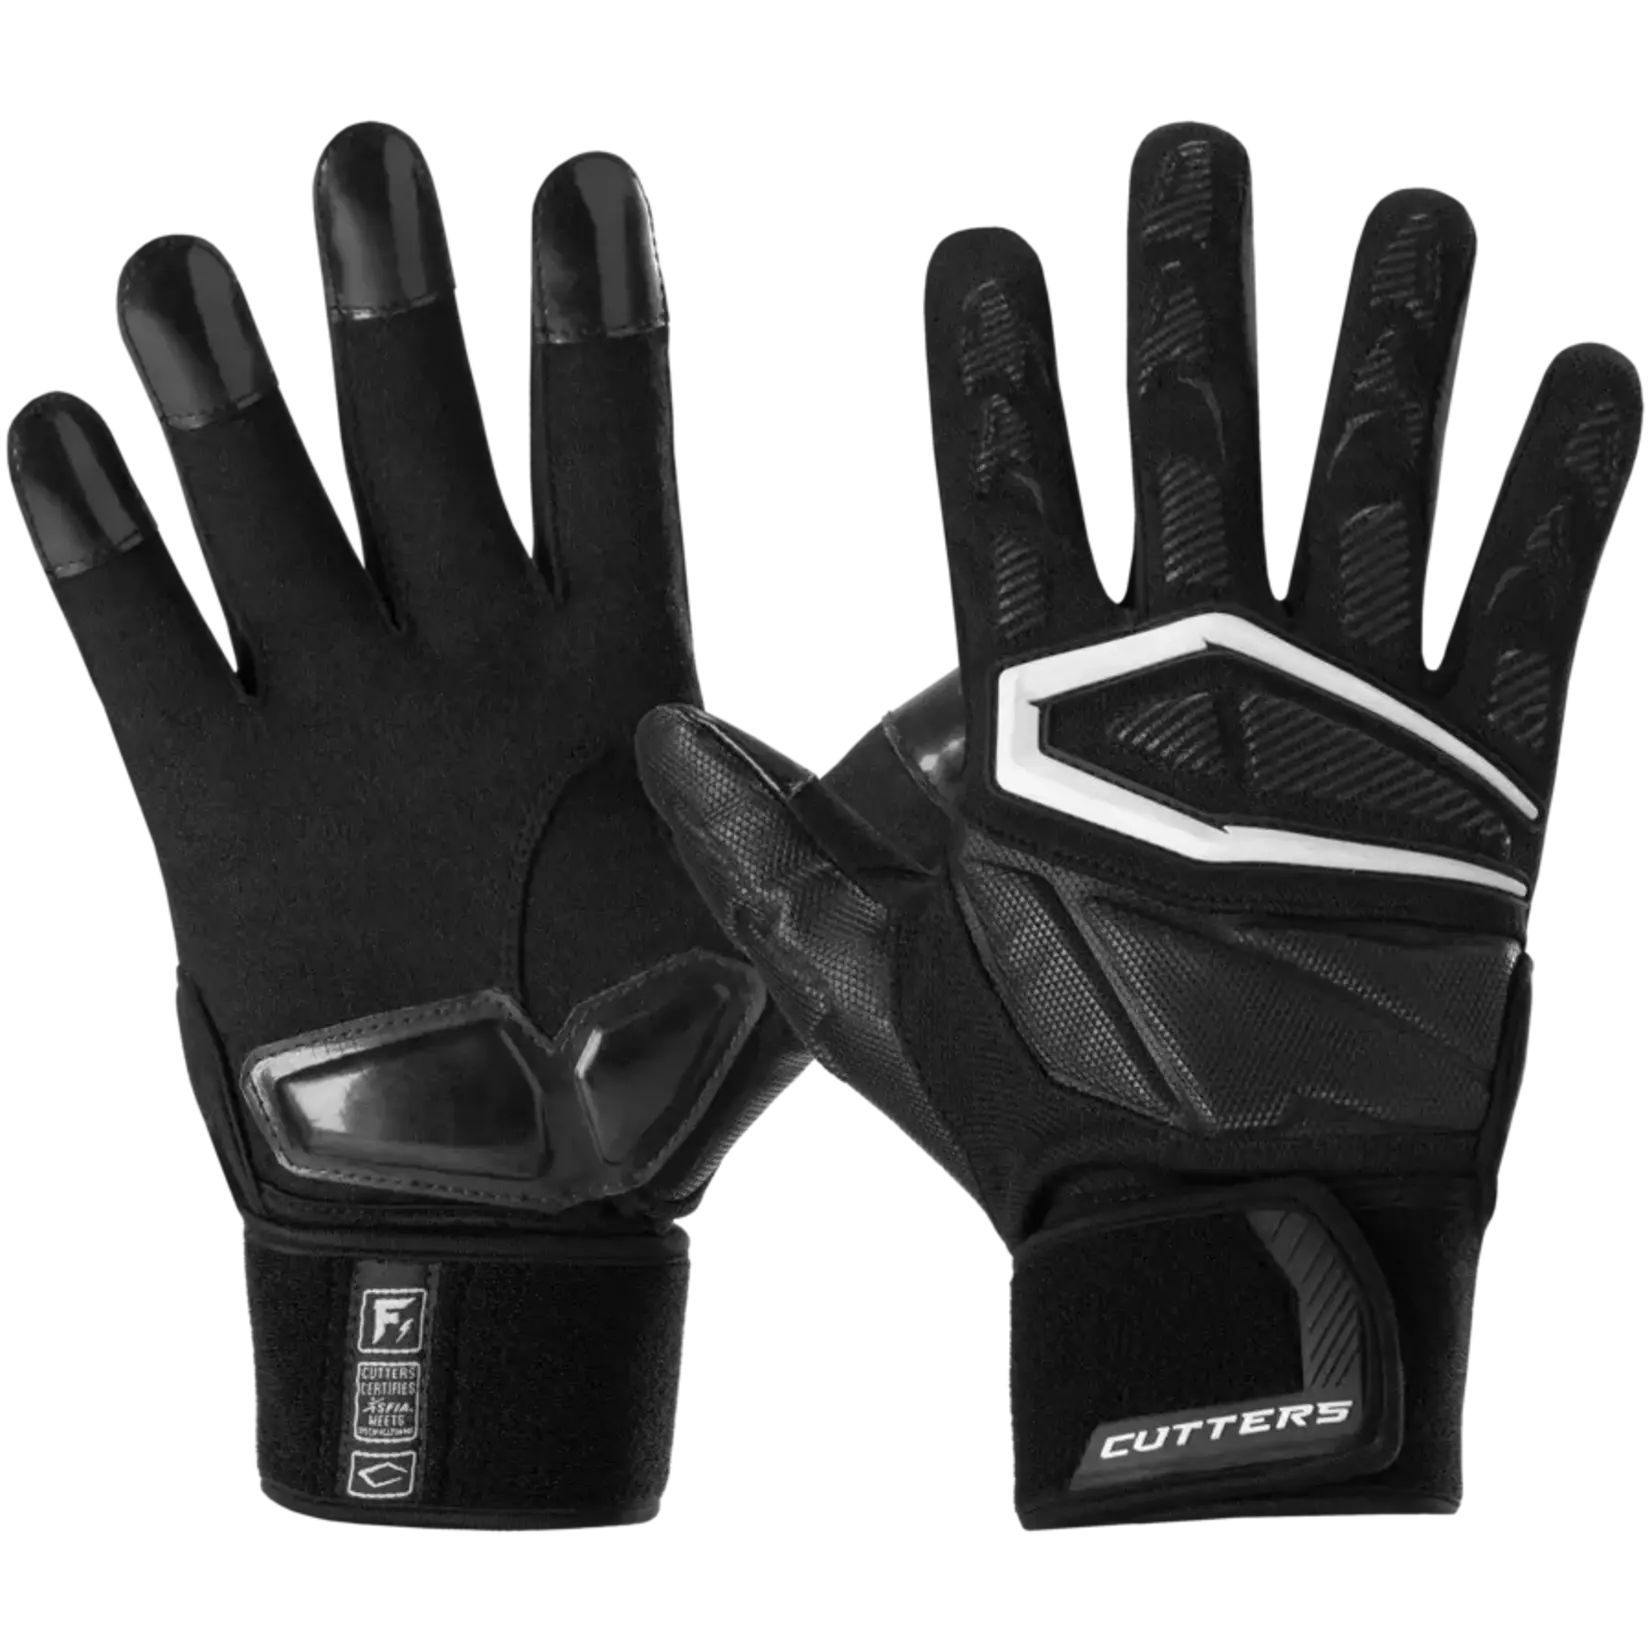 Cutters Cutters Force 4.0 Linemen Glove